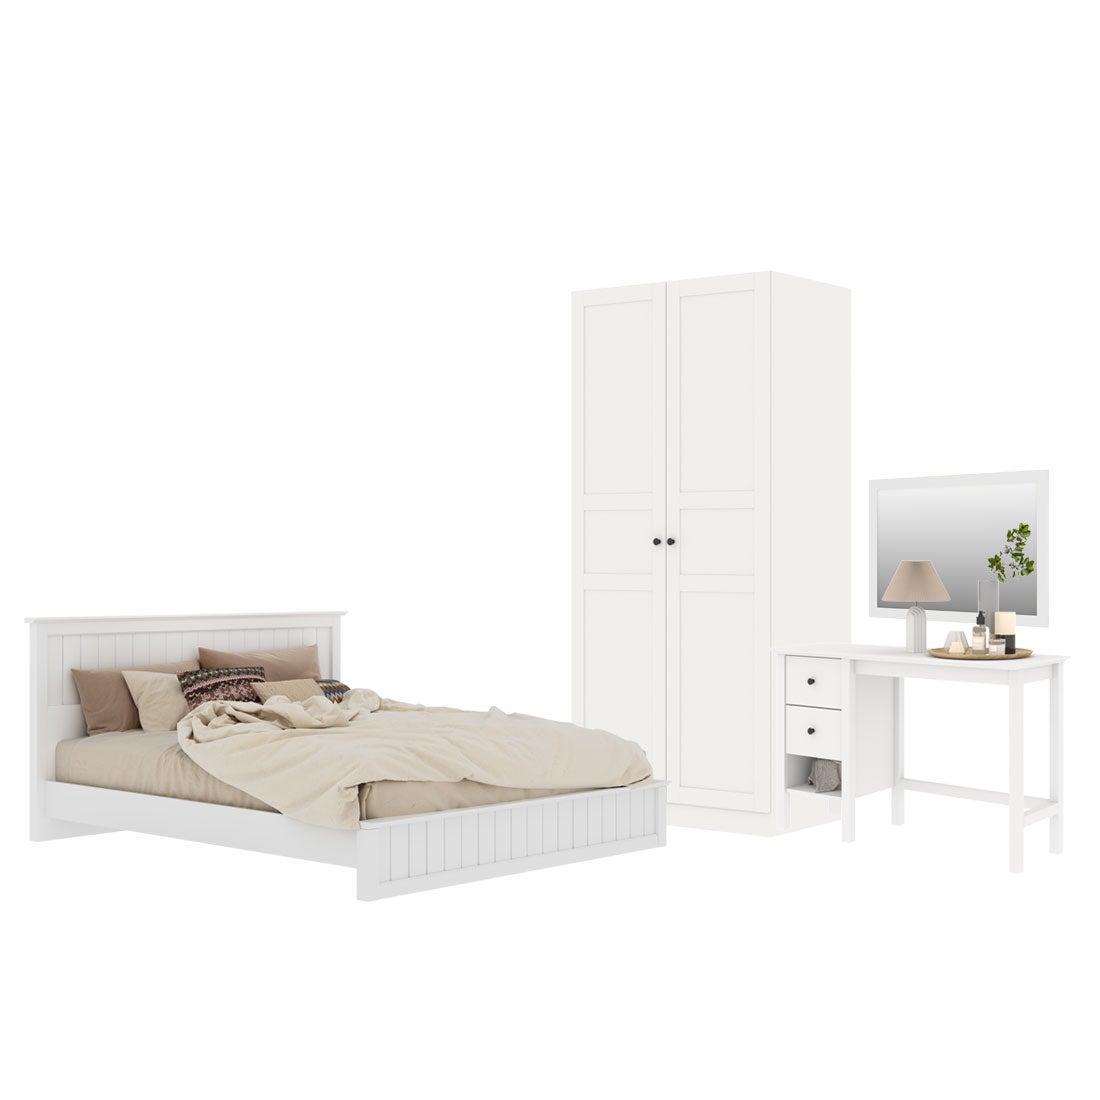 ชุดห้องนอน ขนาด 5 ฟุต รุ่น Moneta & ตู้บานเเปิด 90 ซม. สีขาว01